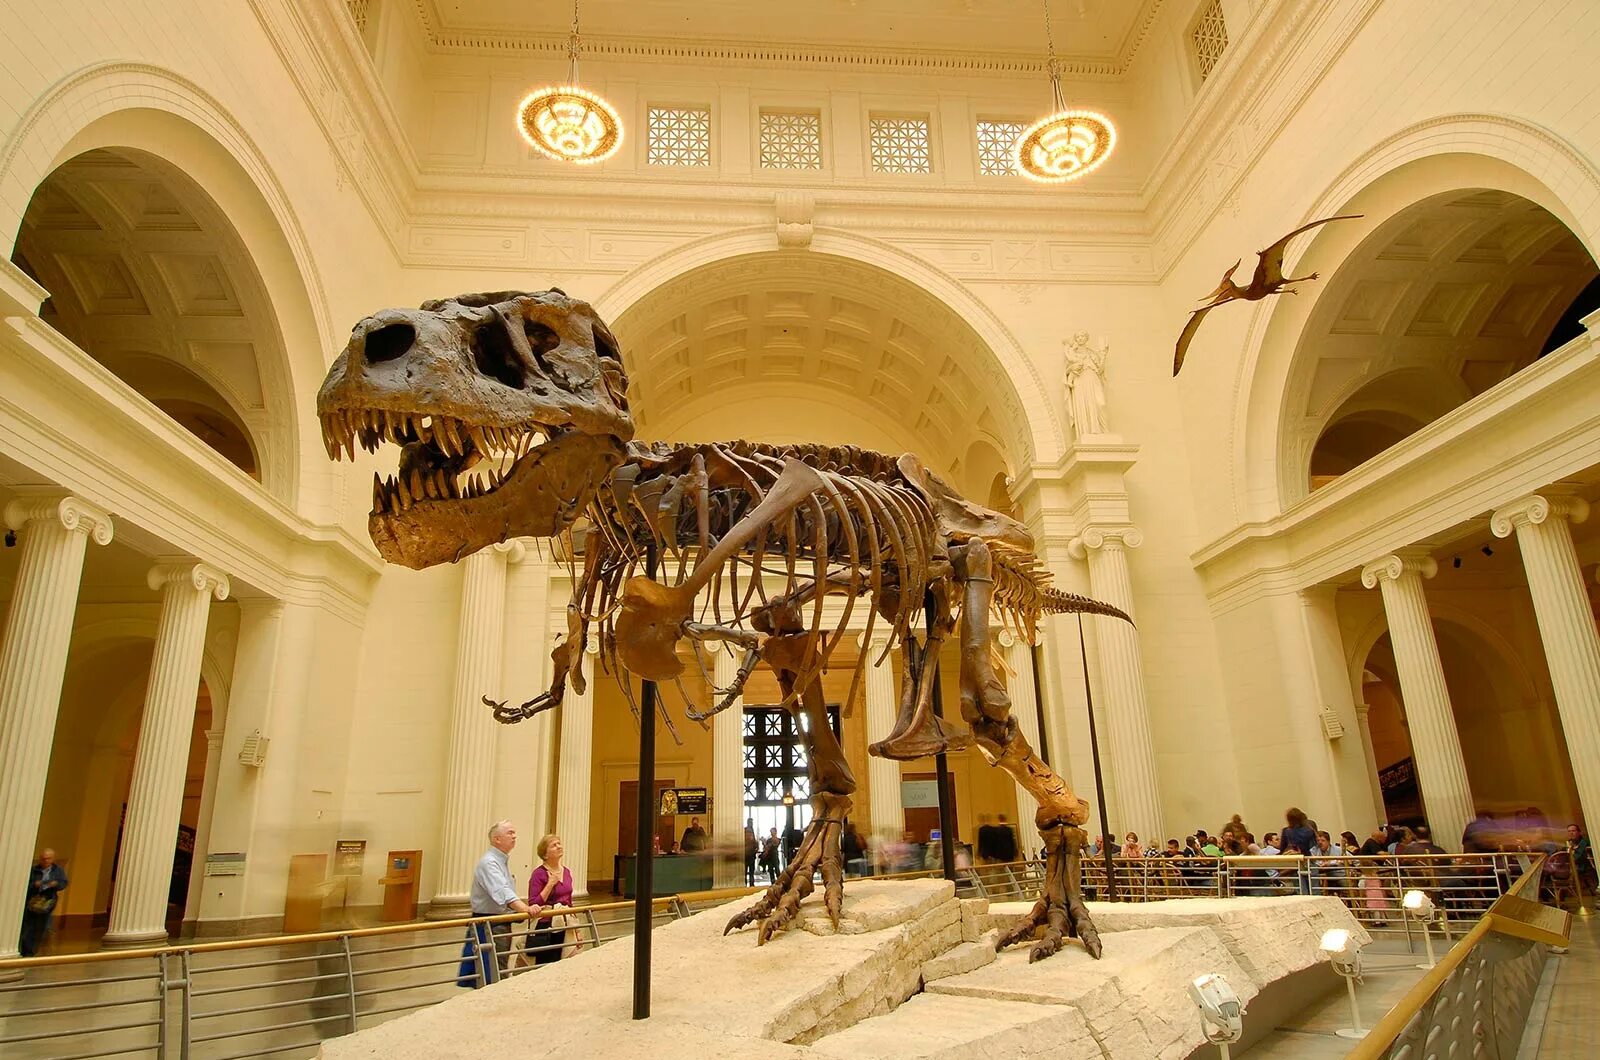 Going to museum. Ночь в музее экспонаты. Музеи за границей. Динозавр в музее вертикальное. Эрмитаж экскурсия в зал динозавров.